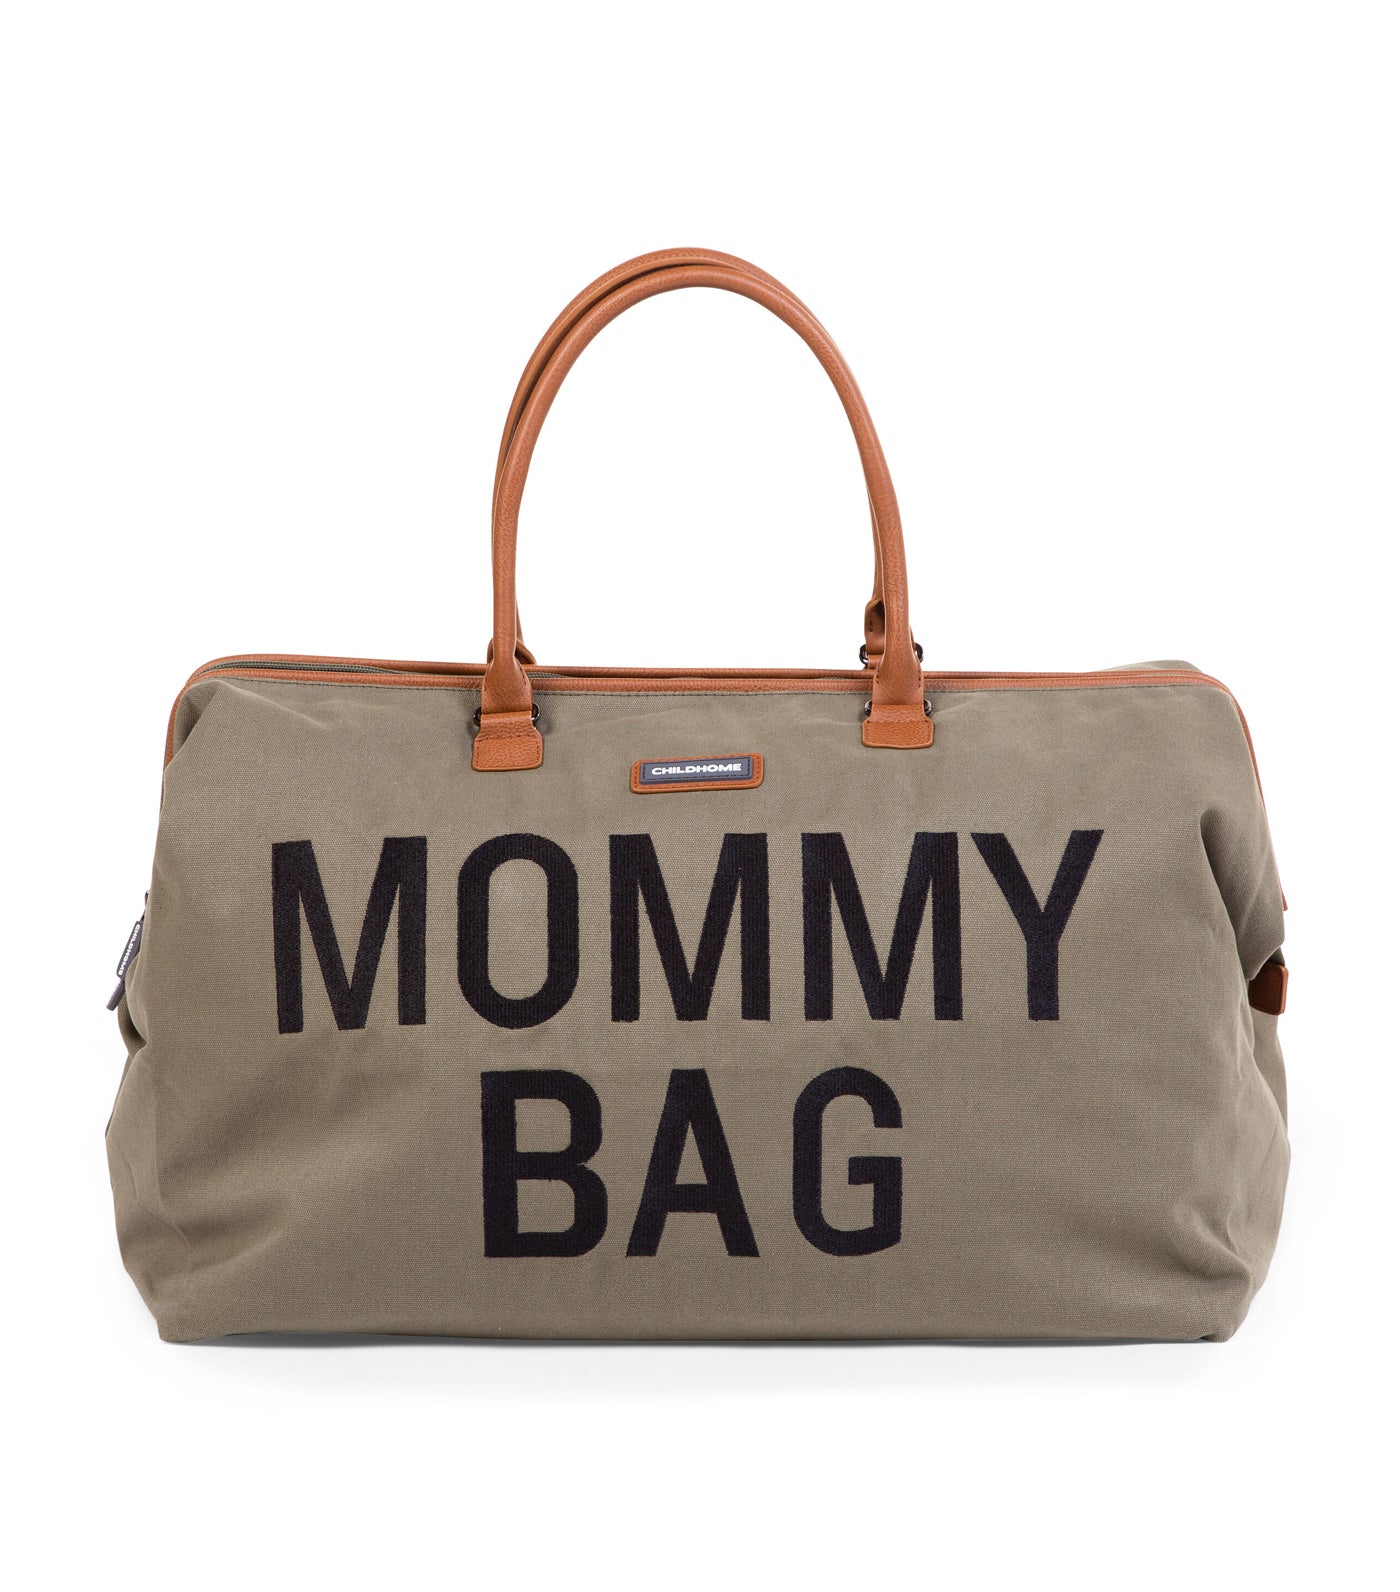 Canvas Mommy Bag - Khaki